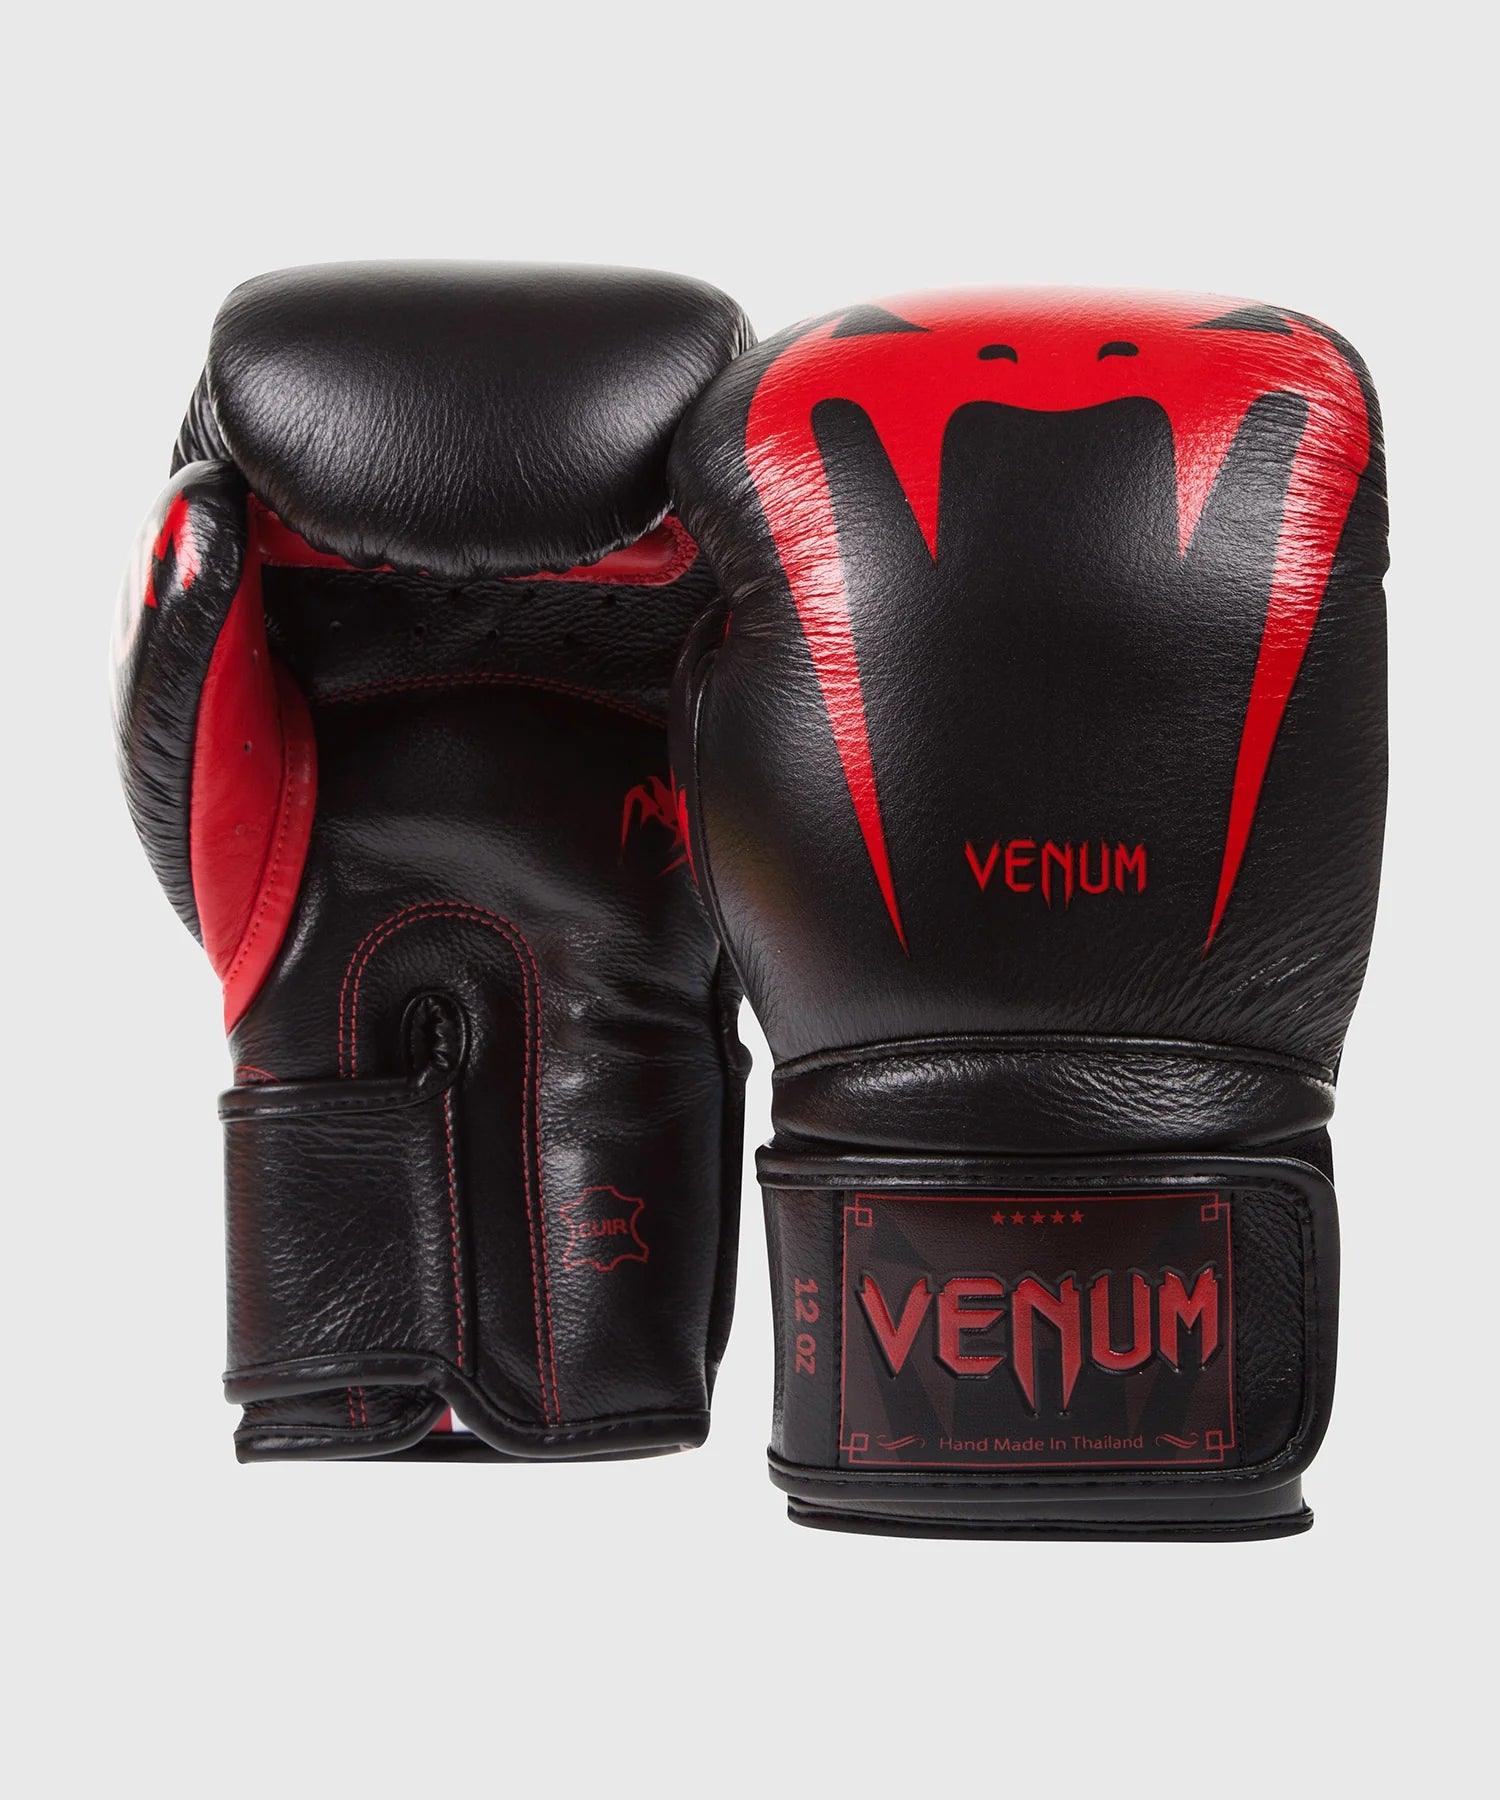 Gants de Boxe Venum Giant 3.0 Black Devil - Noir/Rouge